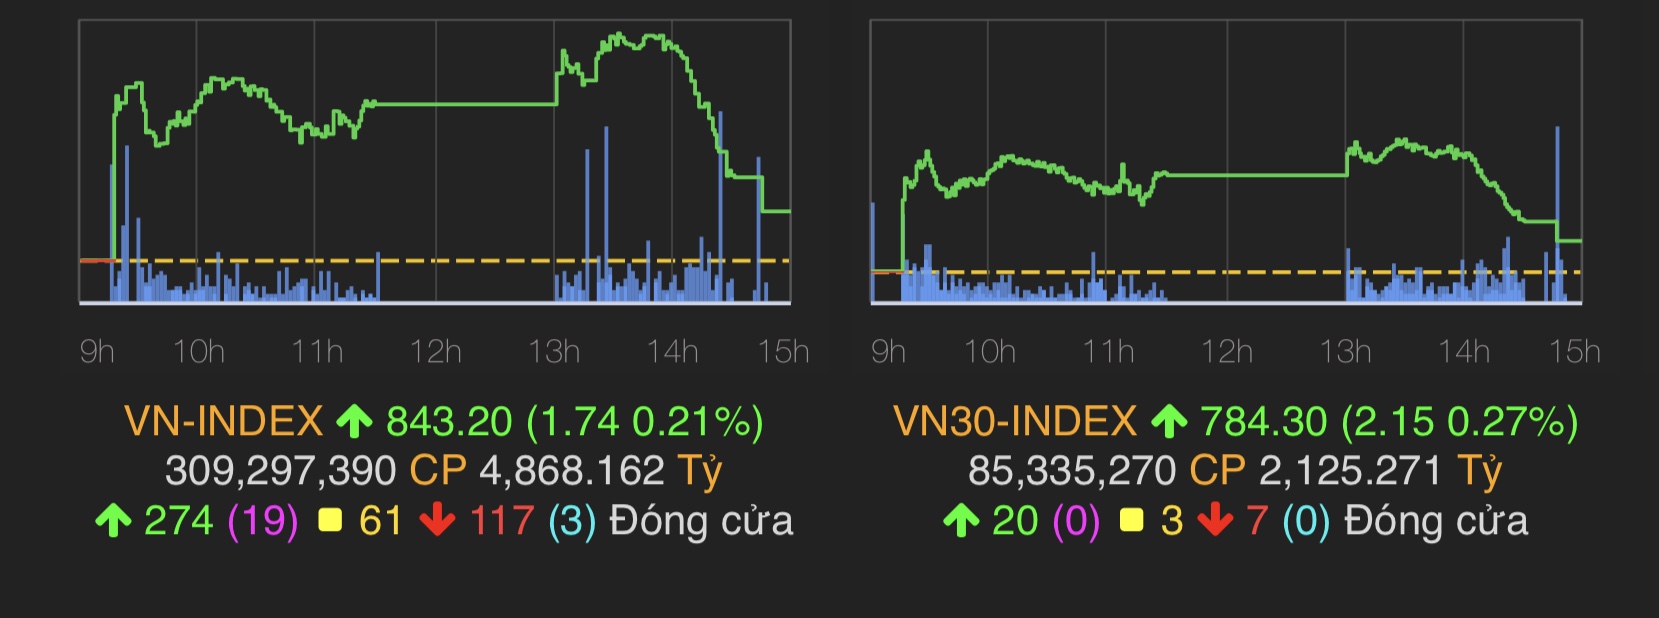 VN-Index tăng nhẹ 1,74 điểm (0,21%) lên 843,2 điểm